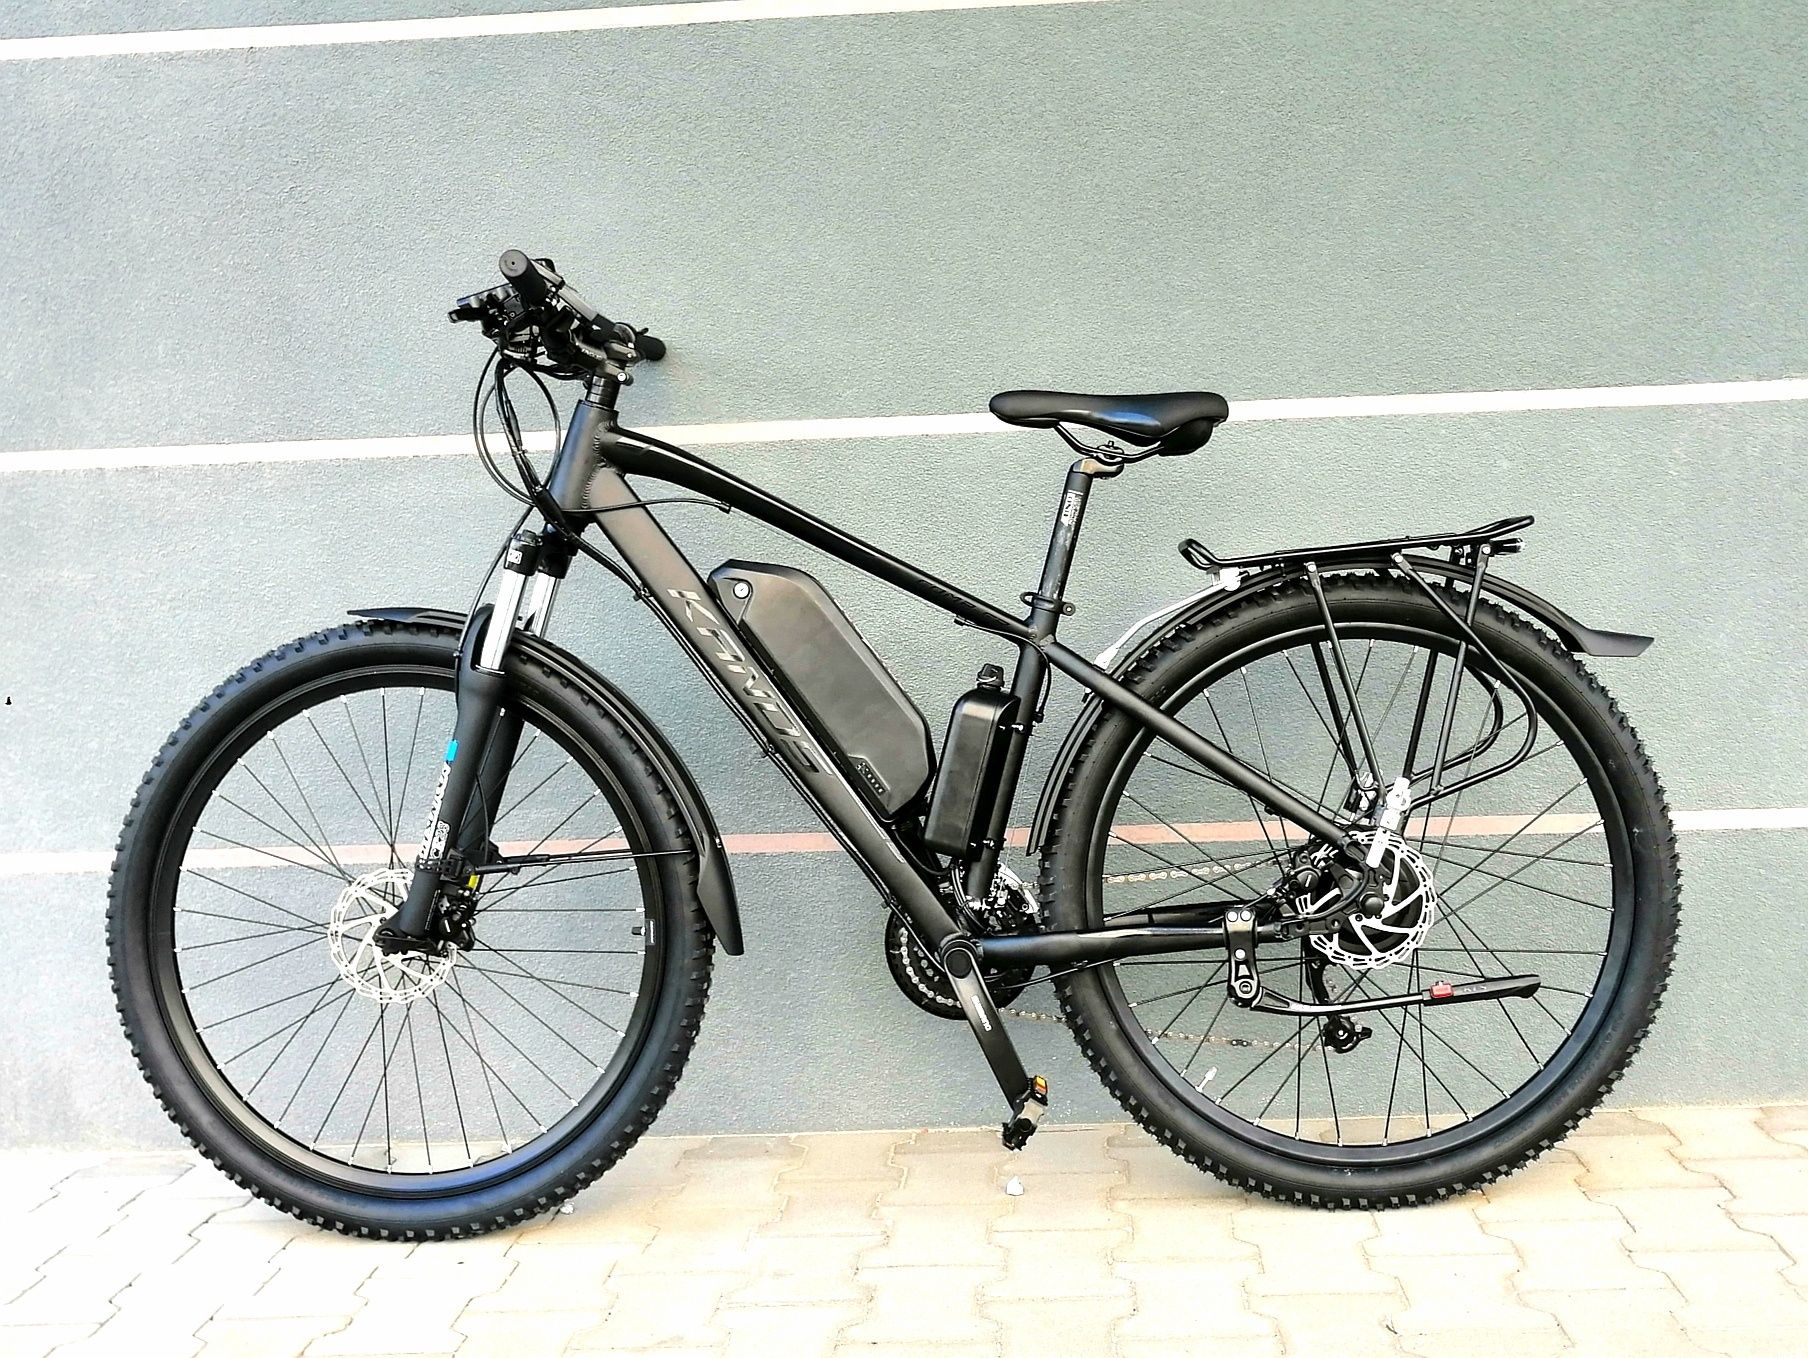 Nowy rower elektryczny 750W, do 50km/h, gwarancja, faktura VAT